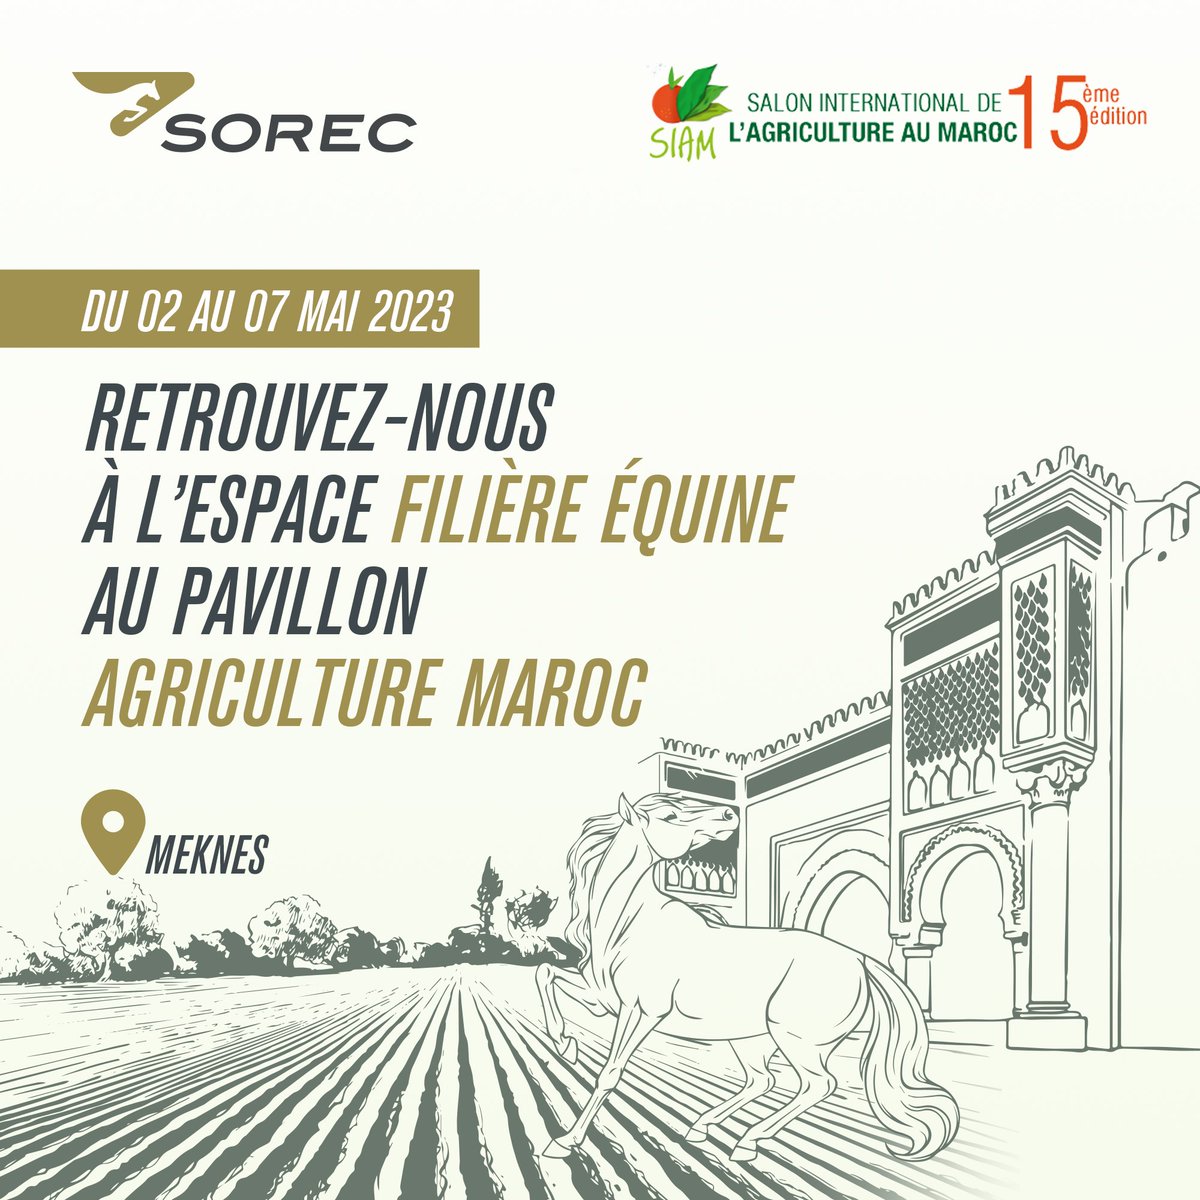 Retrouvez-nous au Salon International de l'Agriculture au Maroc du 2 au 7 mai 2023 à Meknès ! 🌱🐴

La SOREC, sponsor Gold de la 15ème édition du SIAM, vous donne rendez-vous à l’espace Filière Équine au pavillon Agriculture Maroc.

#SIAM2023 #GenerationGreen #Maroc